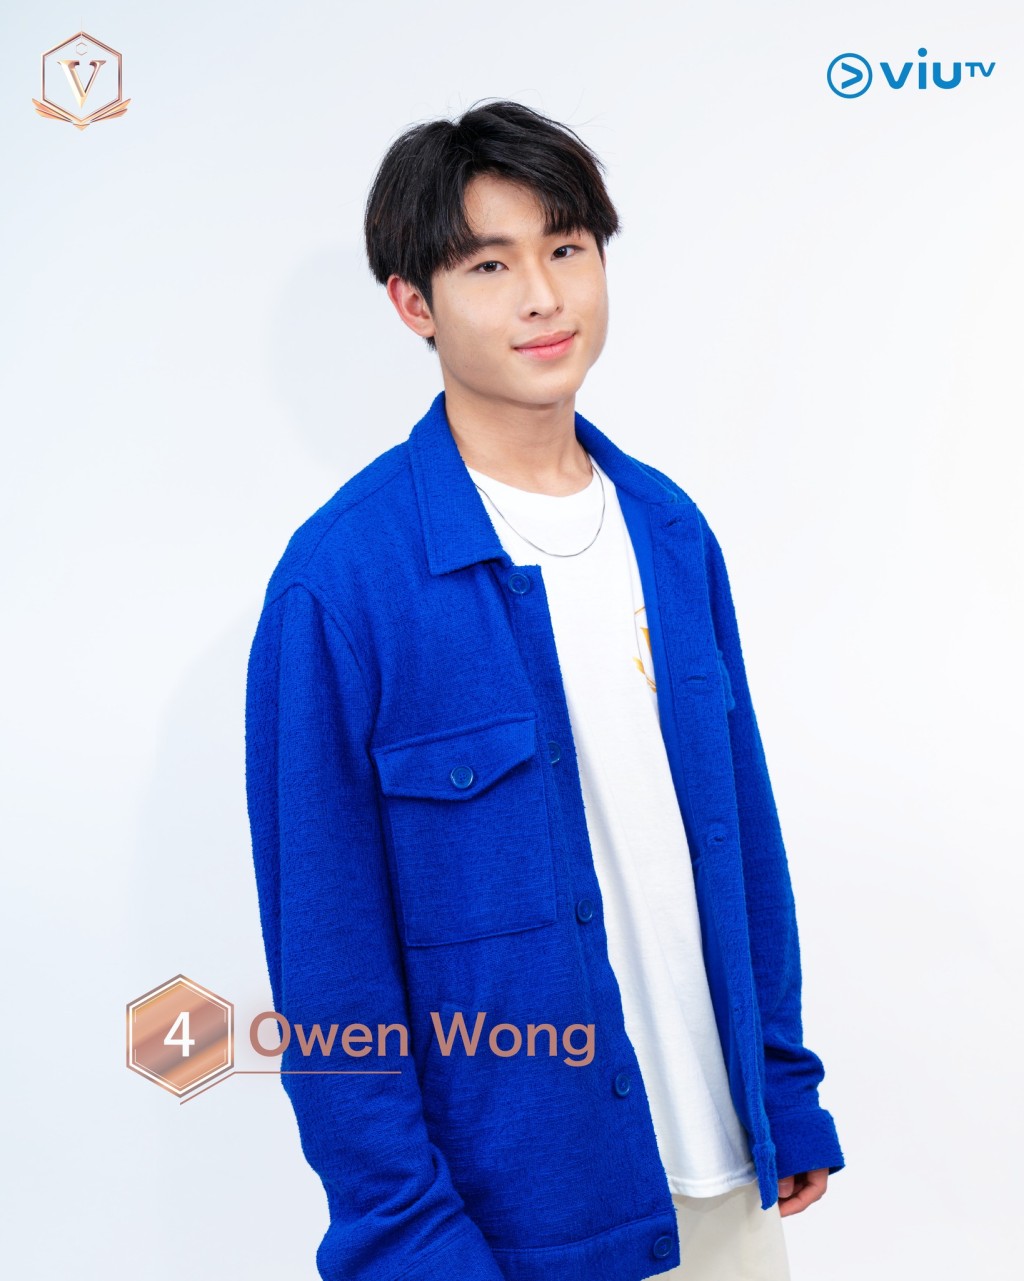 王諾言 (Owen Wong） 年齡： 17 職業： 全職Busker 擅長： 唱歌、籃球 IG：nokyin____